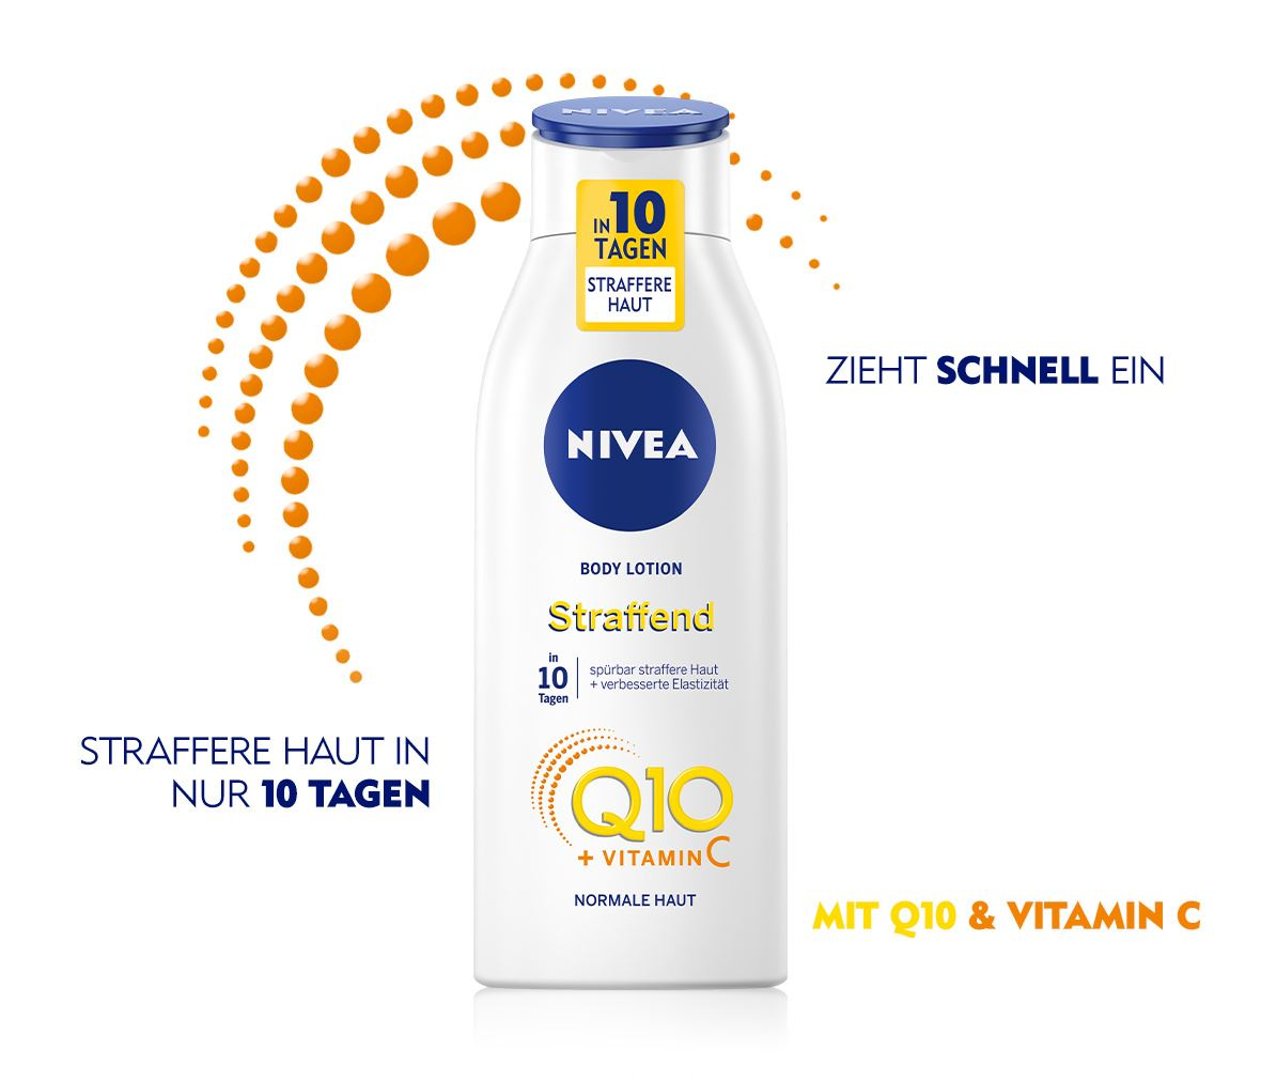 Nivea Q10 + Vitamin C Hautstraffende Body Lotion für normale Haut - 400 g Flasche